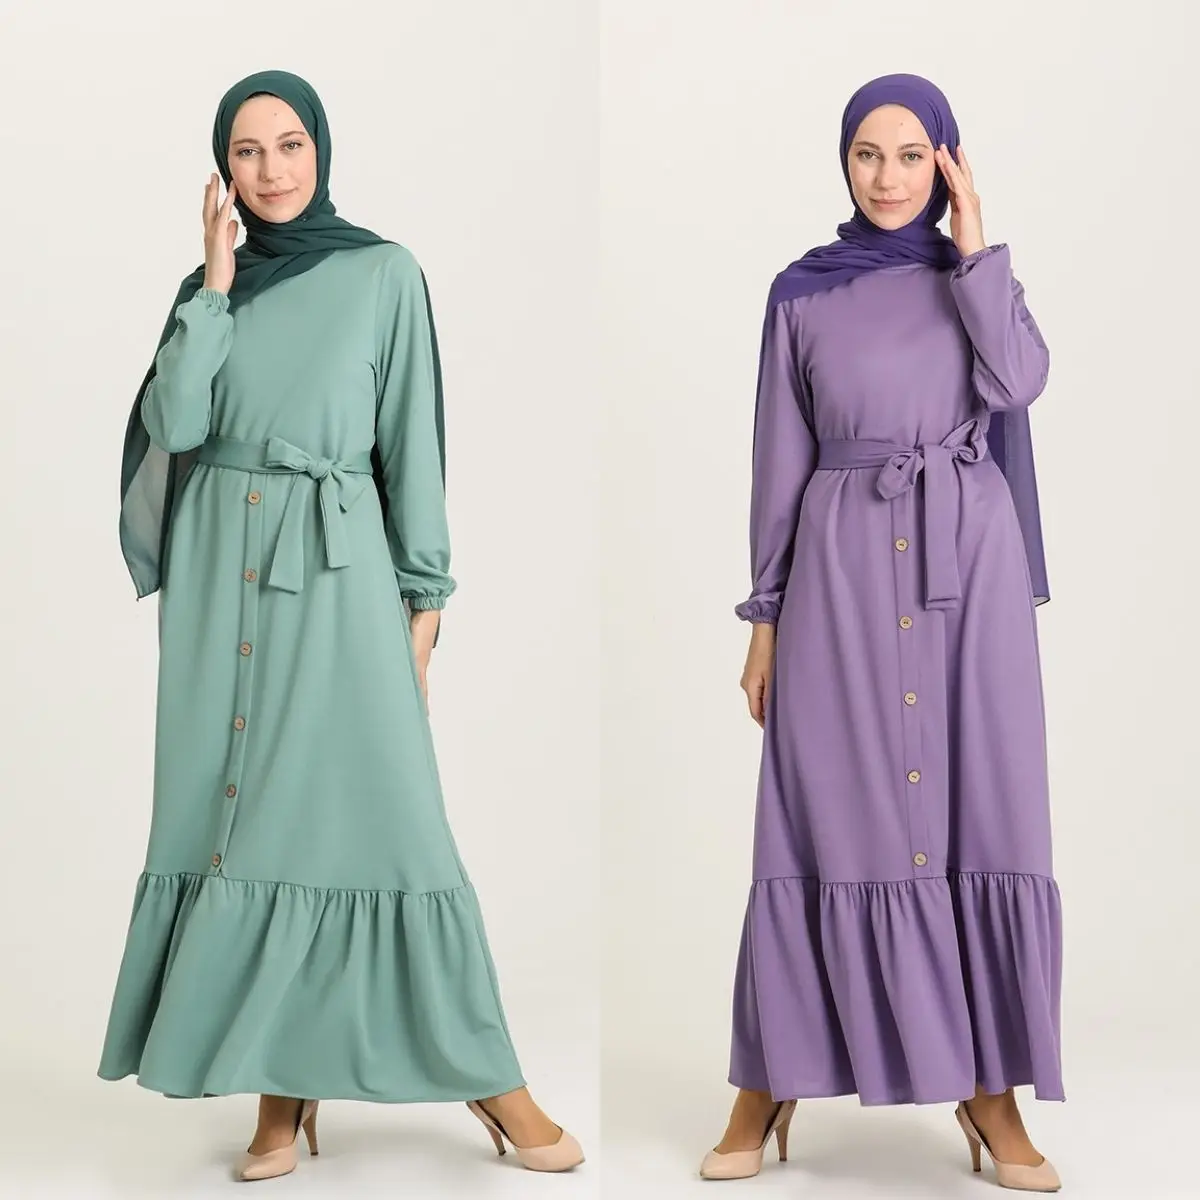 Плиссированное Платье с поясом, на пуговицах, с длинным рукавом, на молнии, без подкладки, сезонное зимнее женское платье, Турция, мусульман